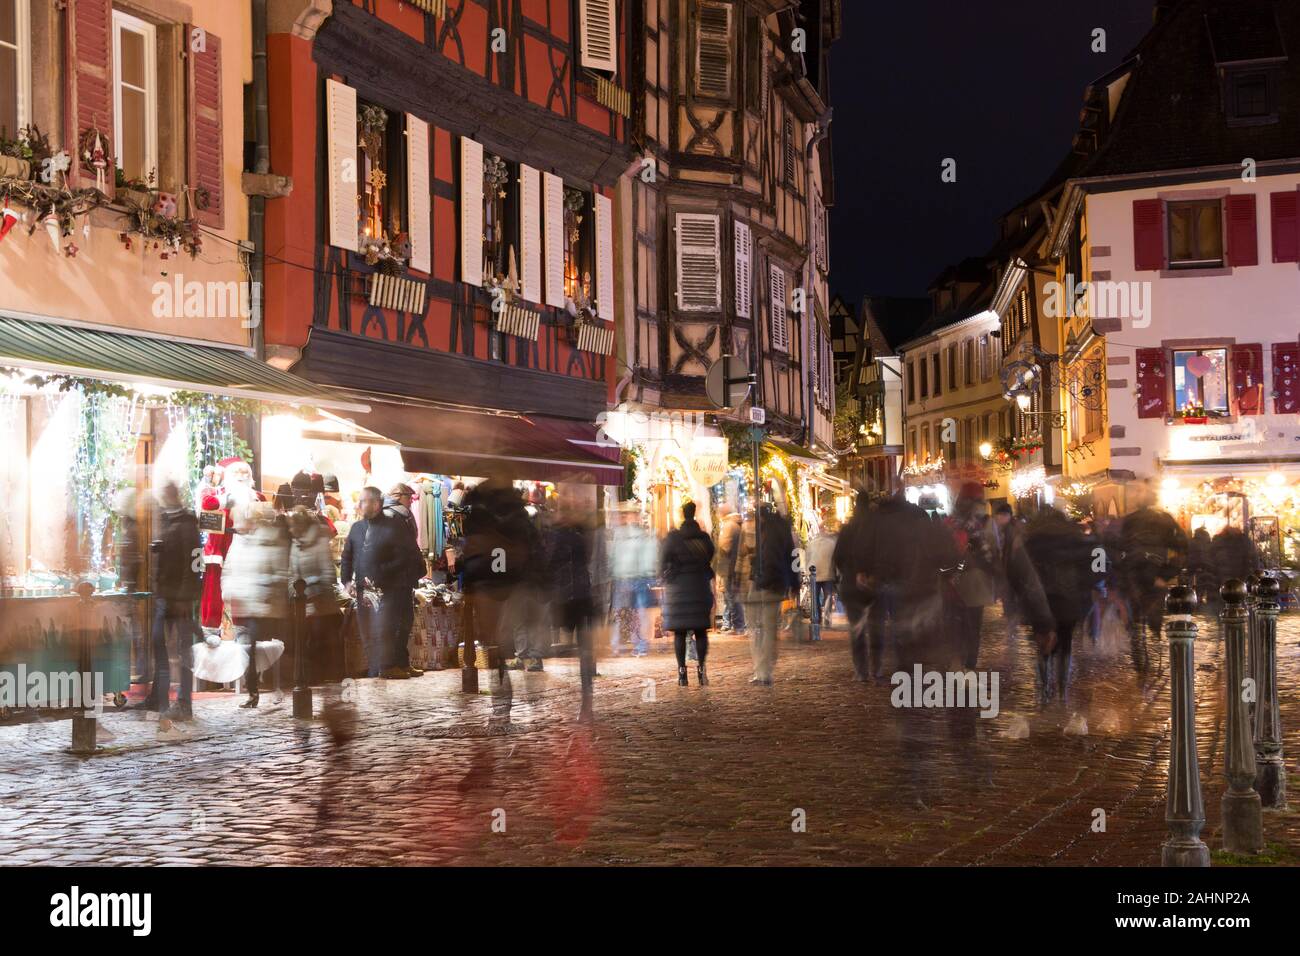 Gli amanti dello shopping sulla strada catturata mediante lenta velocità di otturatore durante il mercatino di Natale in Alsazia, Francia Foto Stock